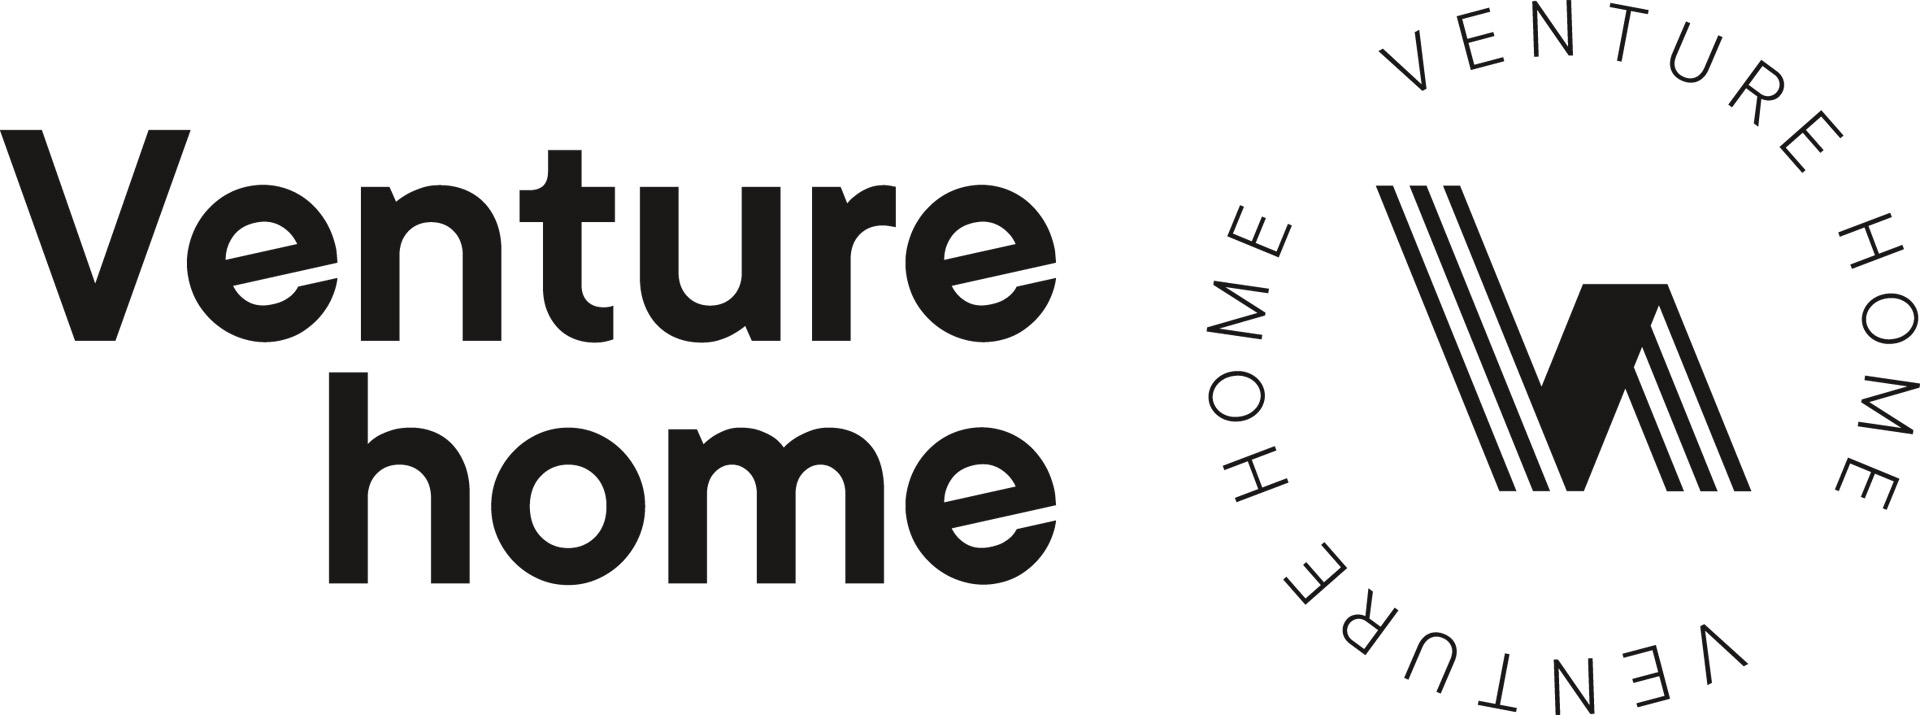 Venture home VENTURE HOME VENTURE HOME